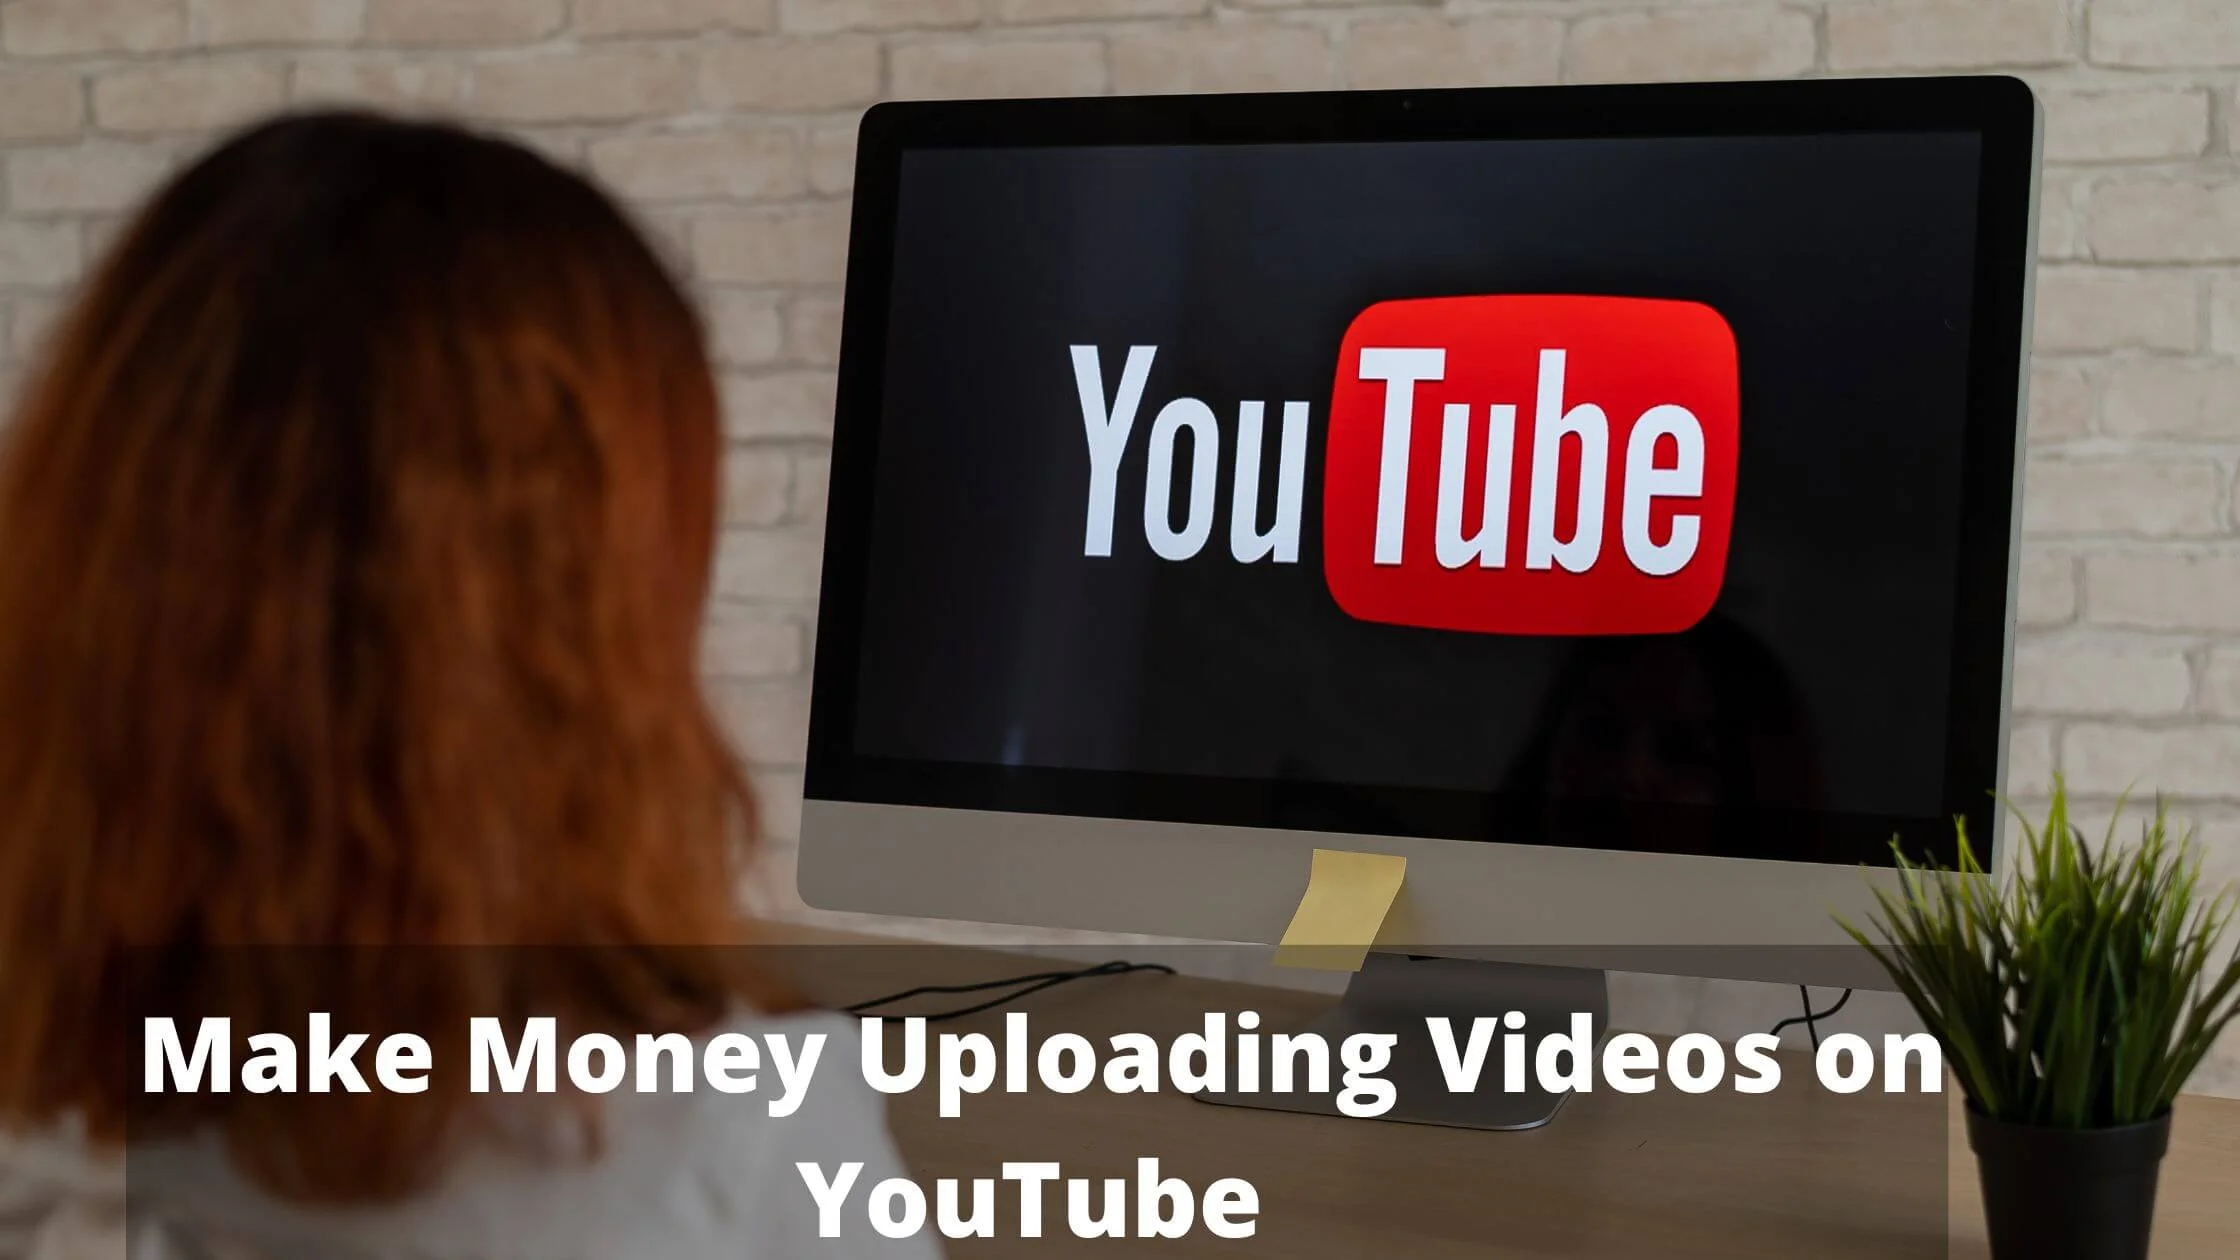 Make Money Uploading Videos on YouTube